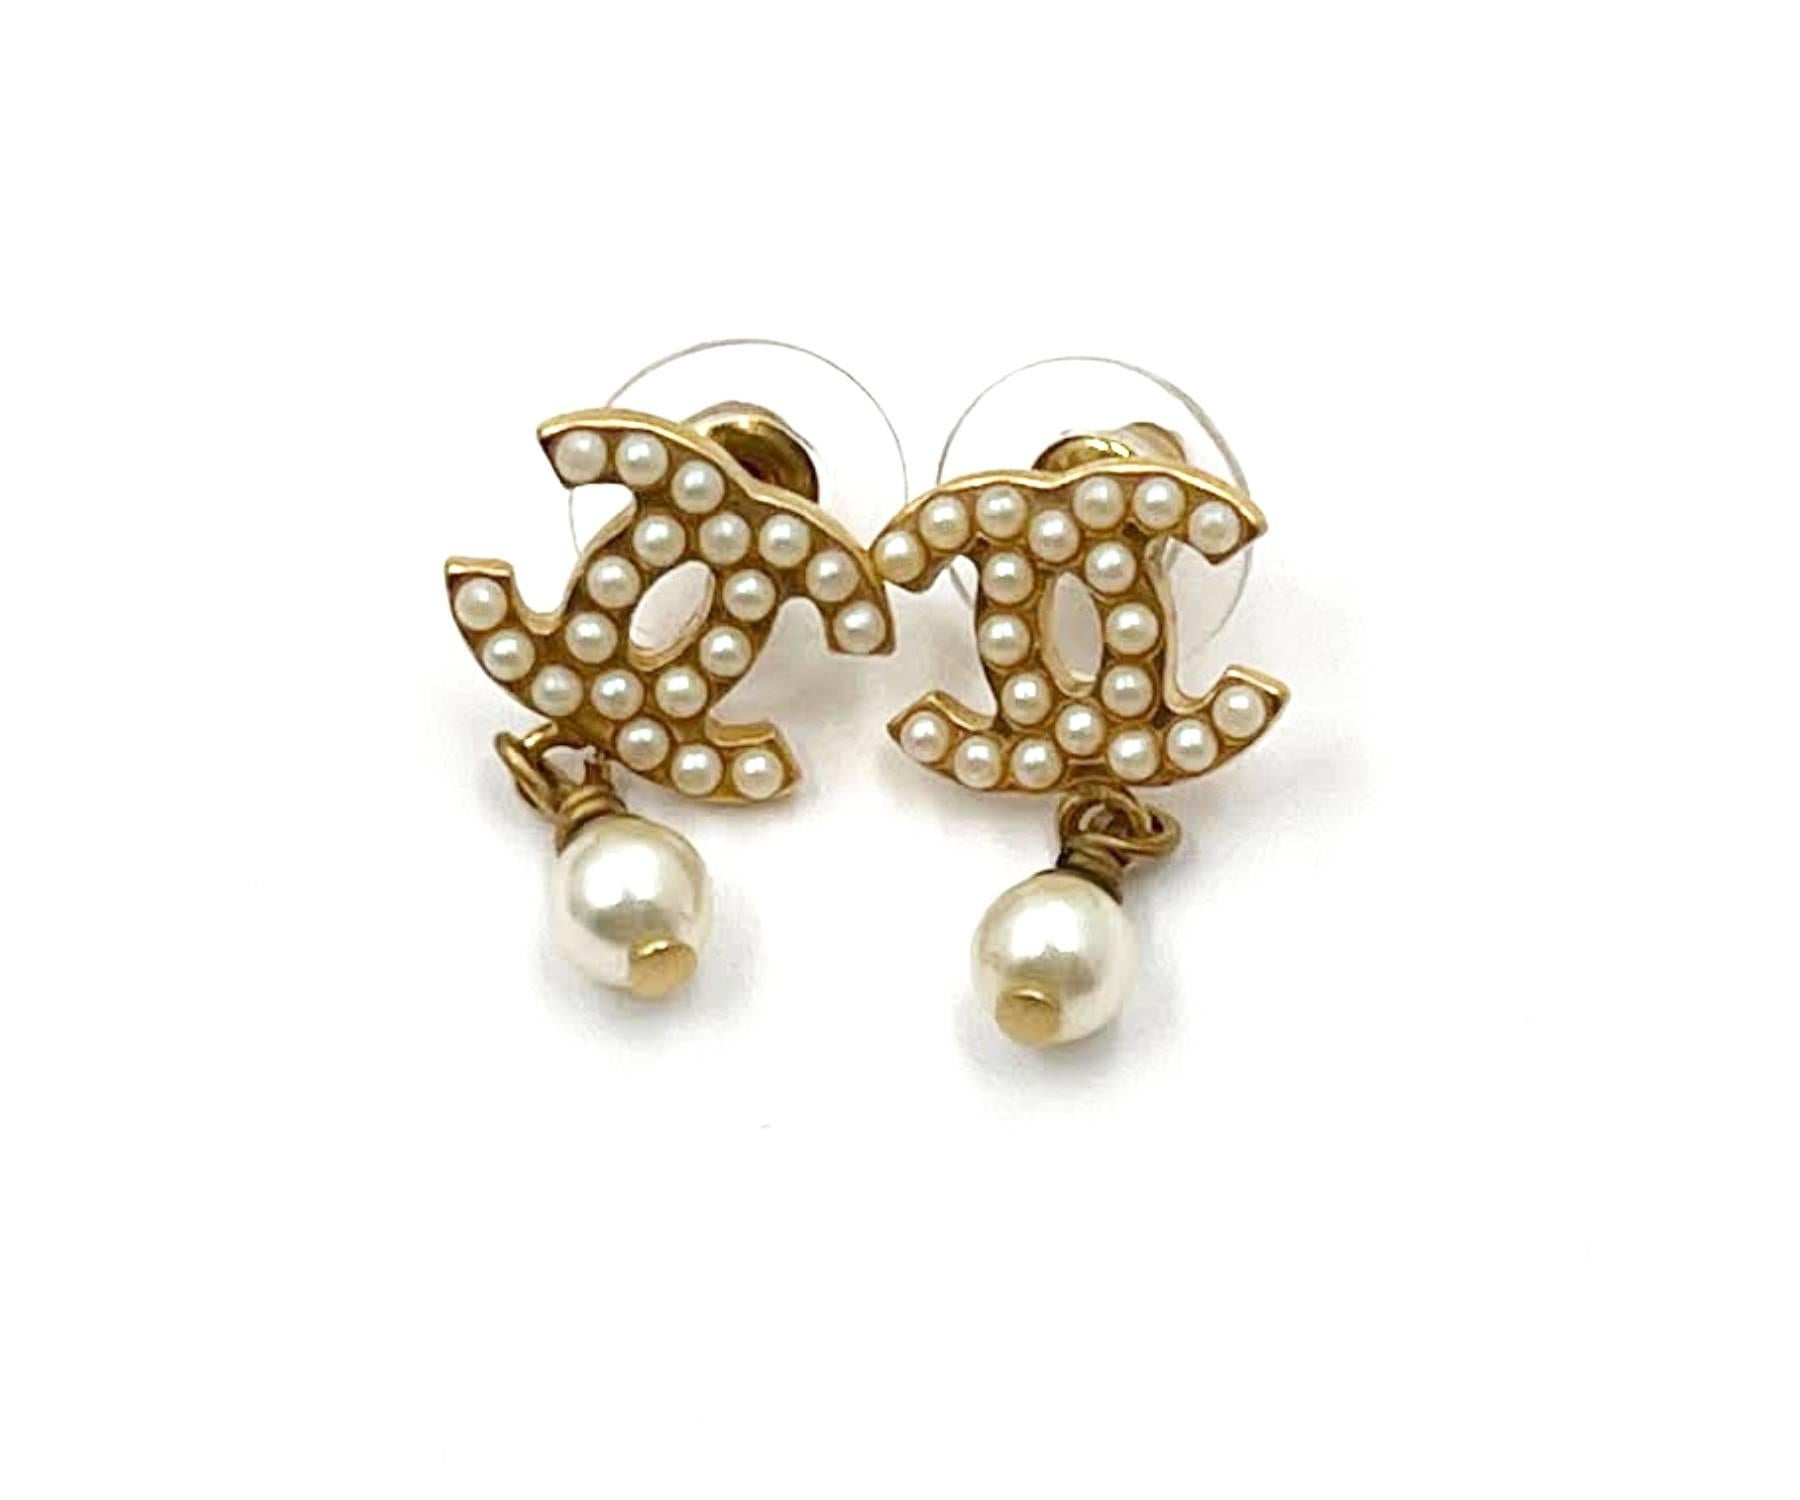 Chanel Vintage Vergoldete Mini-Perlen-Perlen-Ohrringe mit durchbohrten Perlen-Ohrringen

*Markierung 03
*Hergestellt in Italien

-Ungefähr 0,5